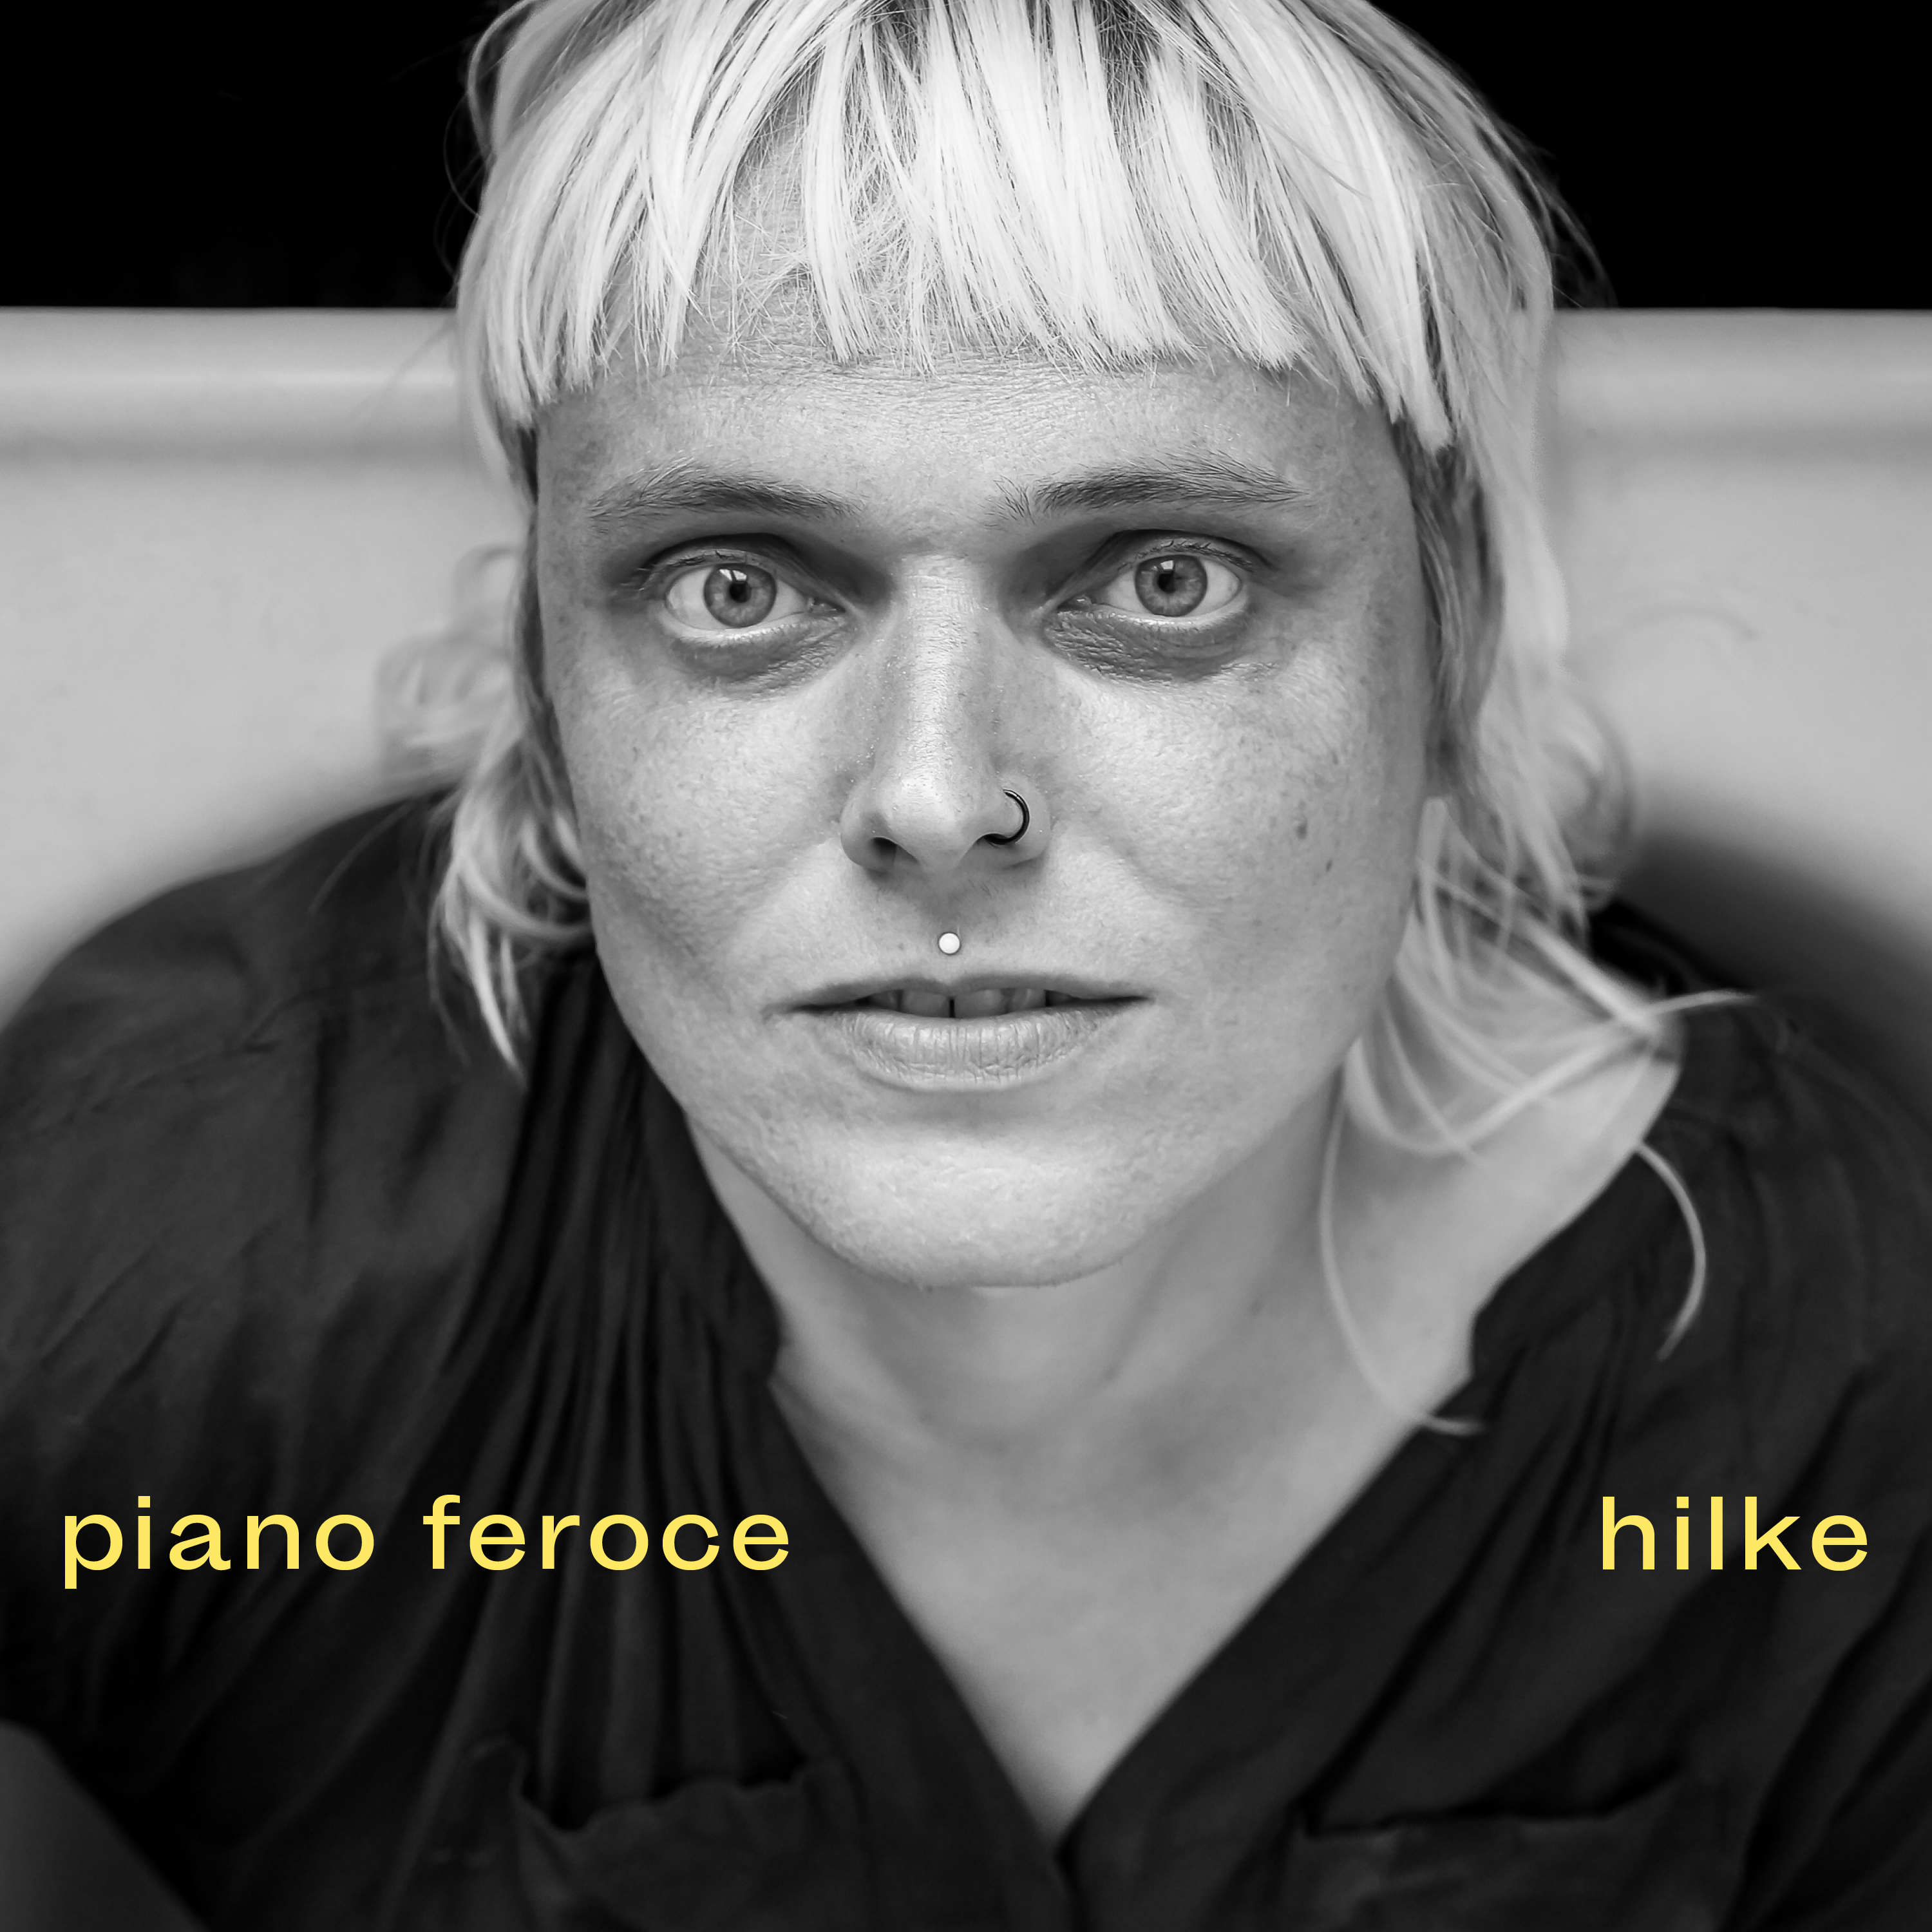 Hilke – Piano Feroce